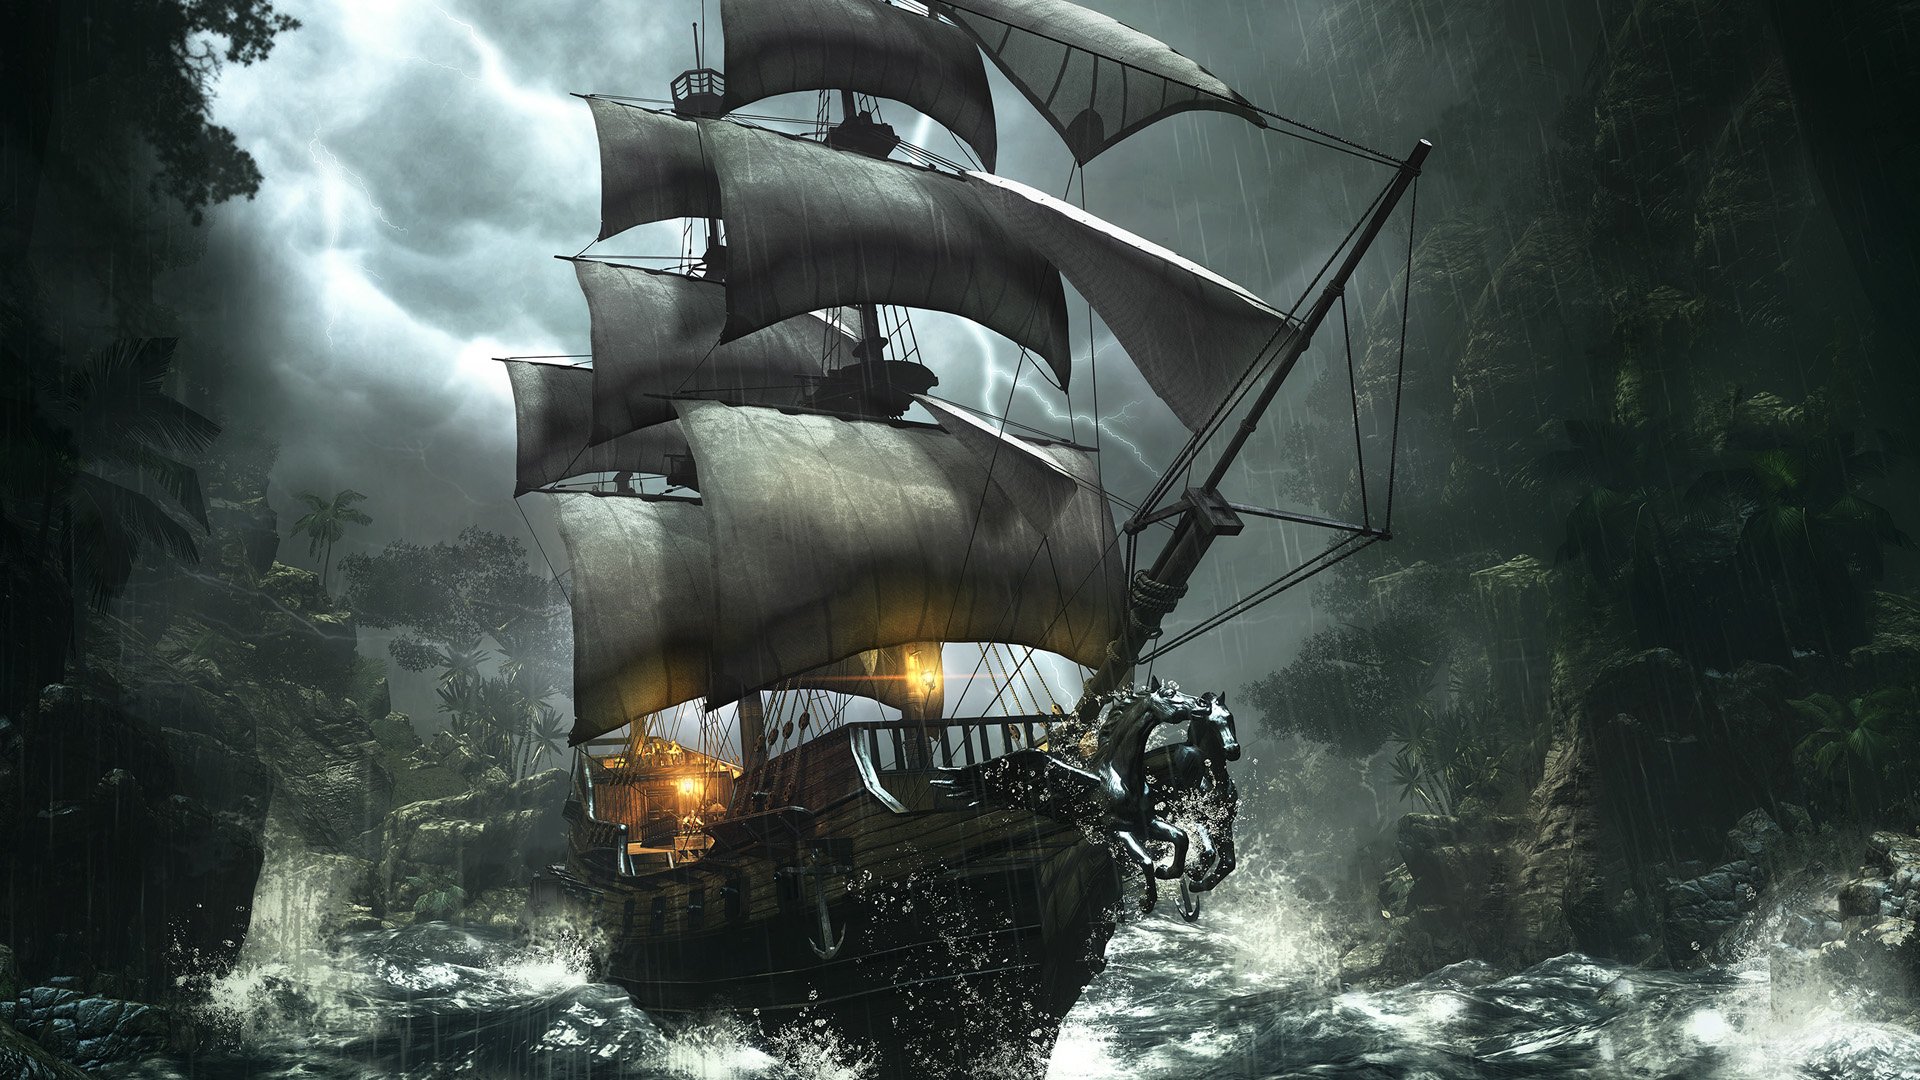 73+] Pirate Ship Wallpaper - WallpaperSafari